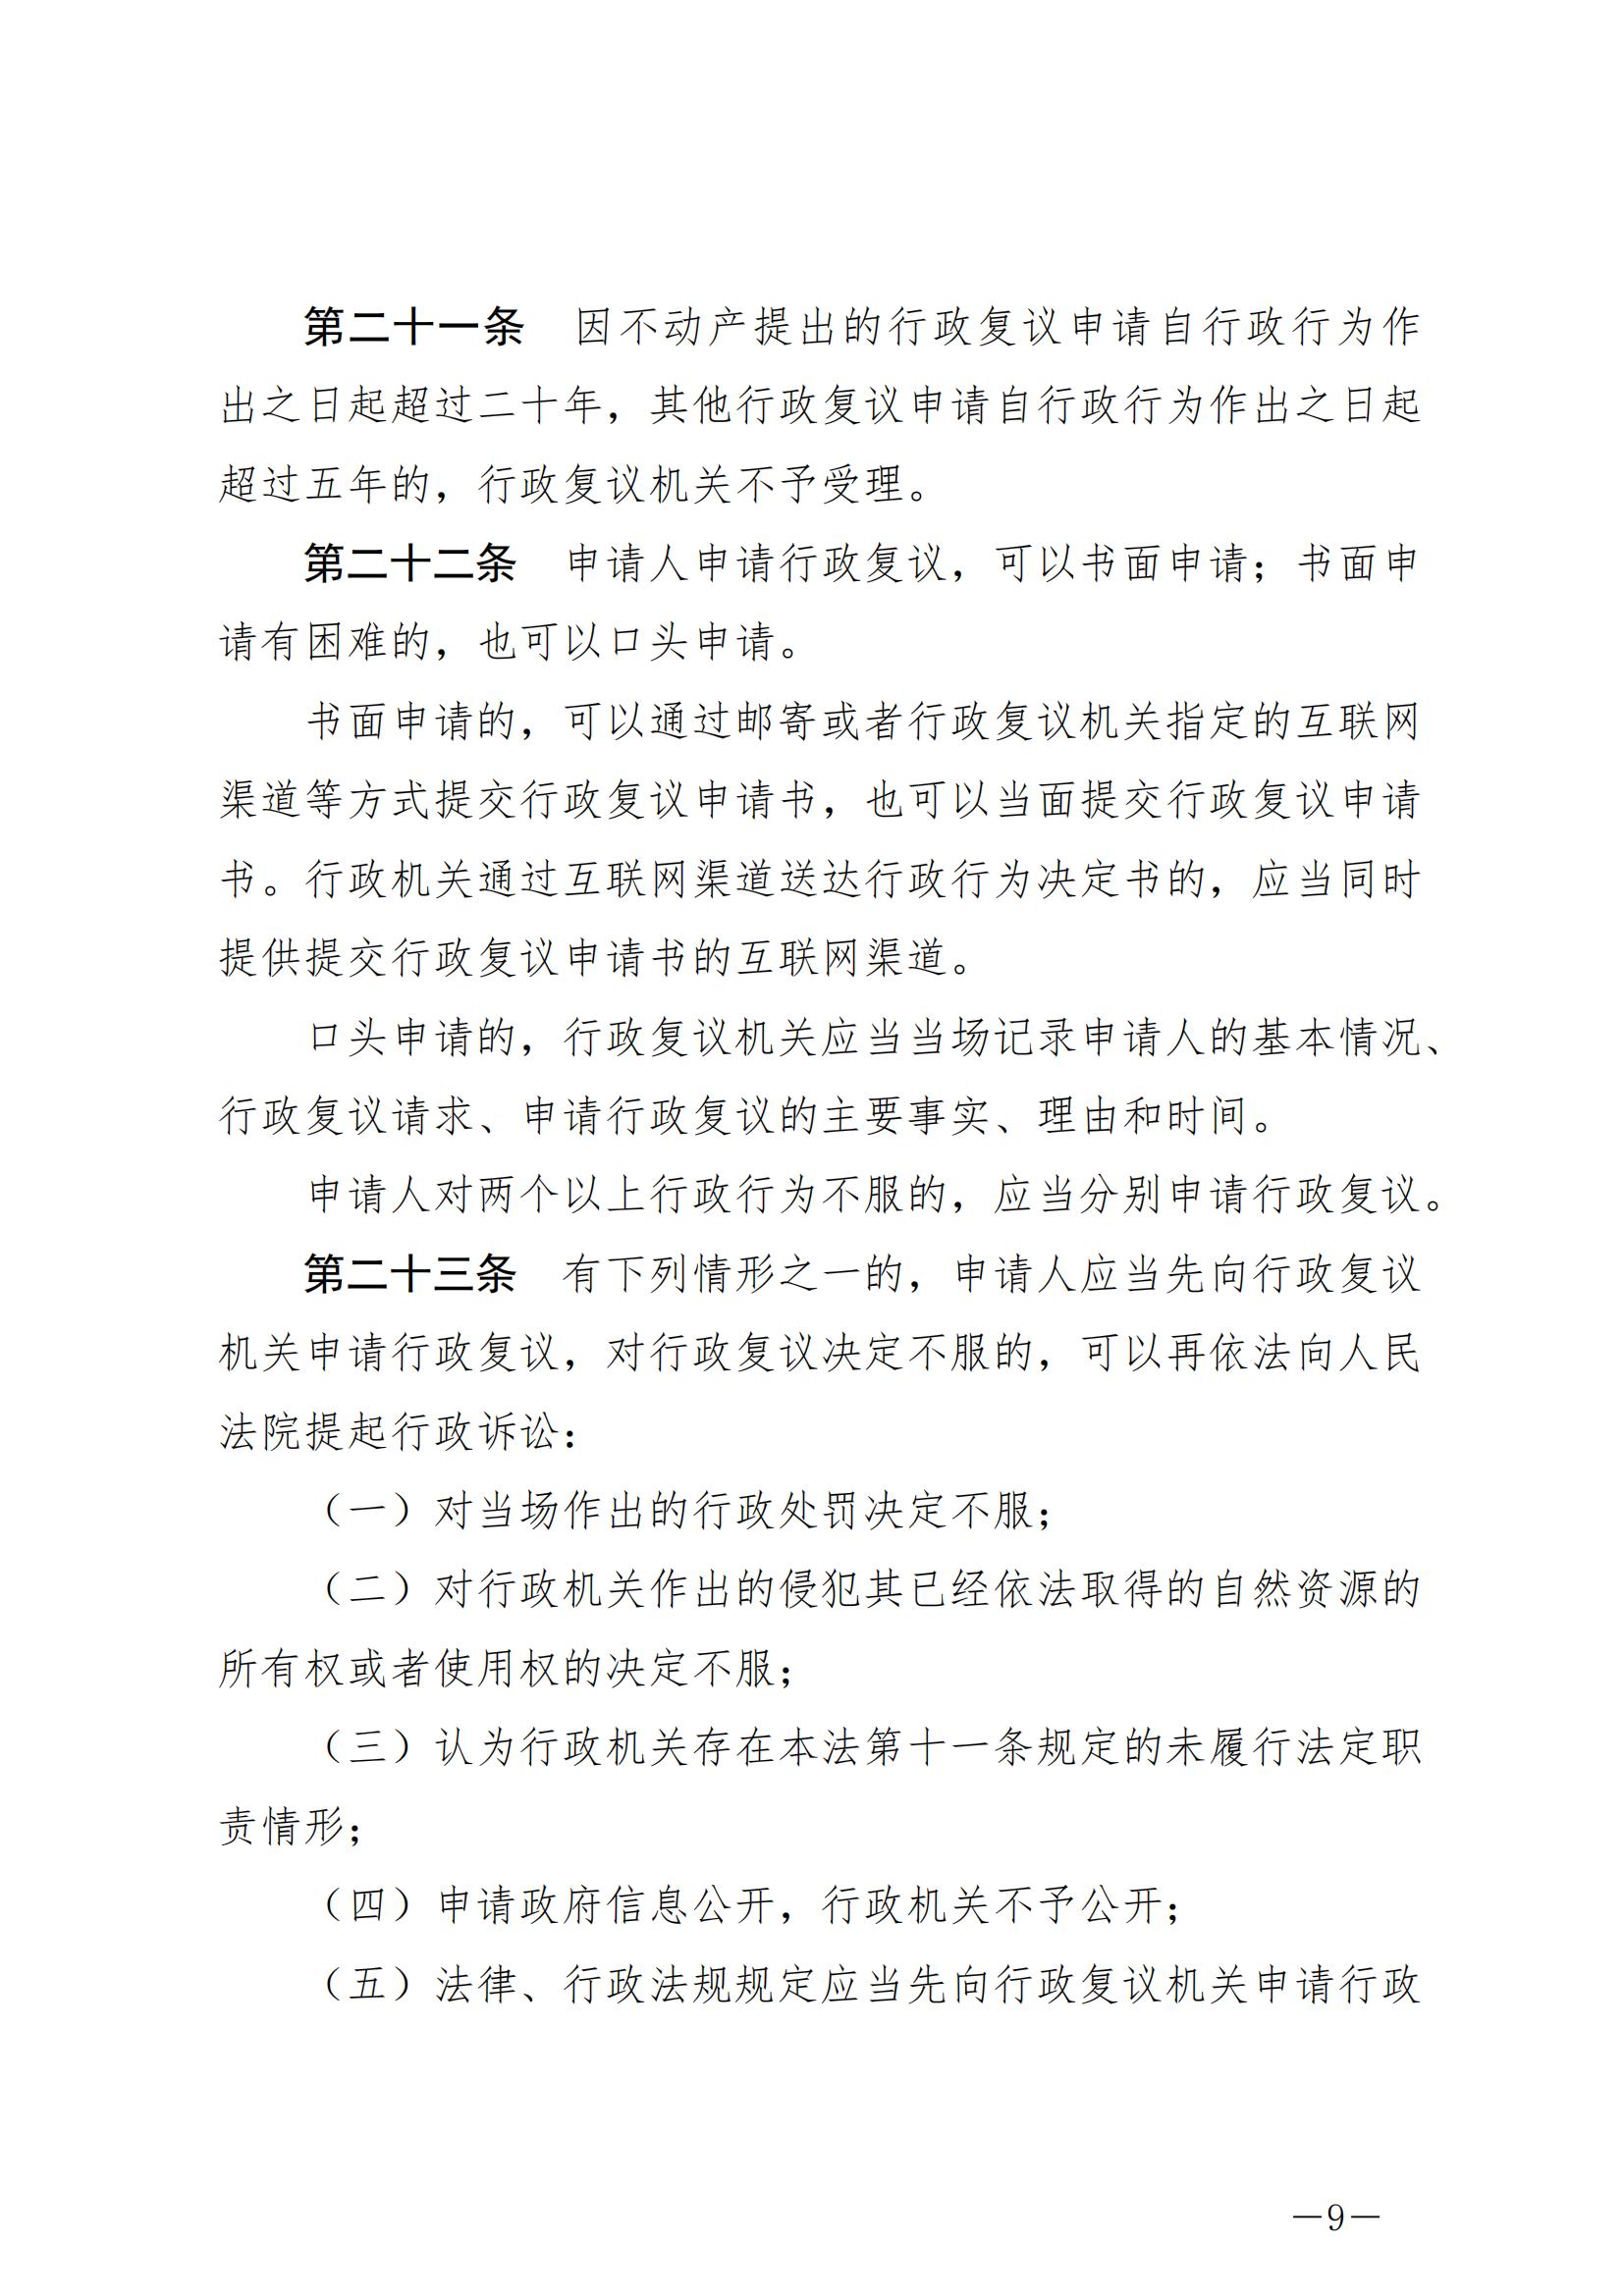 《中华人民共和国行政复议法》_20231204154310_08.jpg